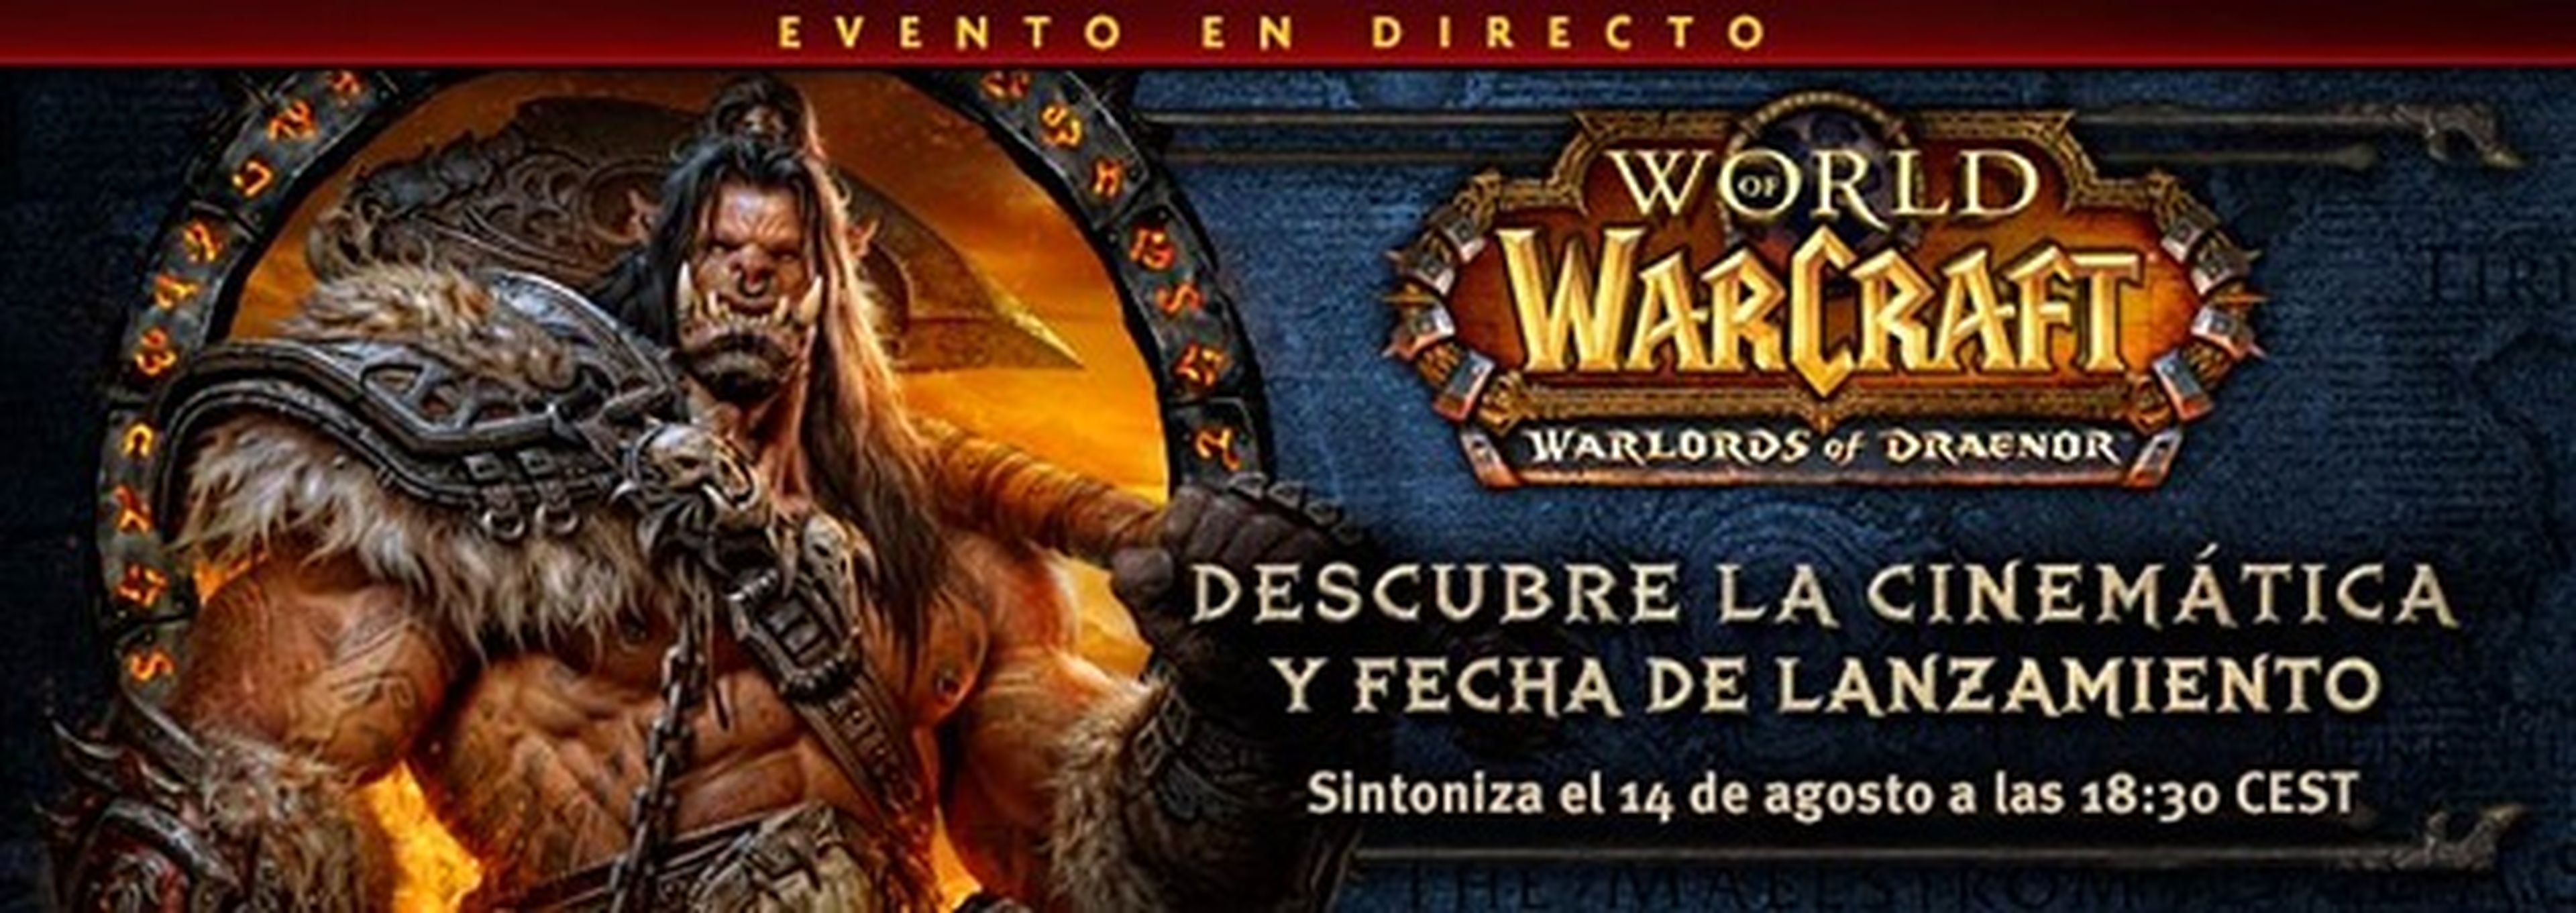 Warlords of Draenor se presentará el 14 de agosto